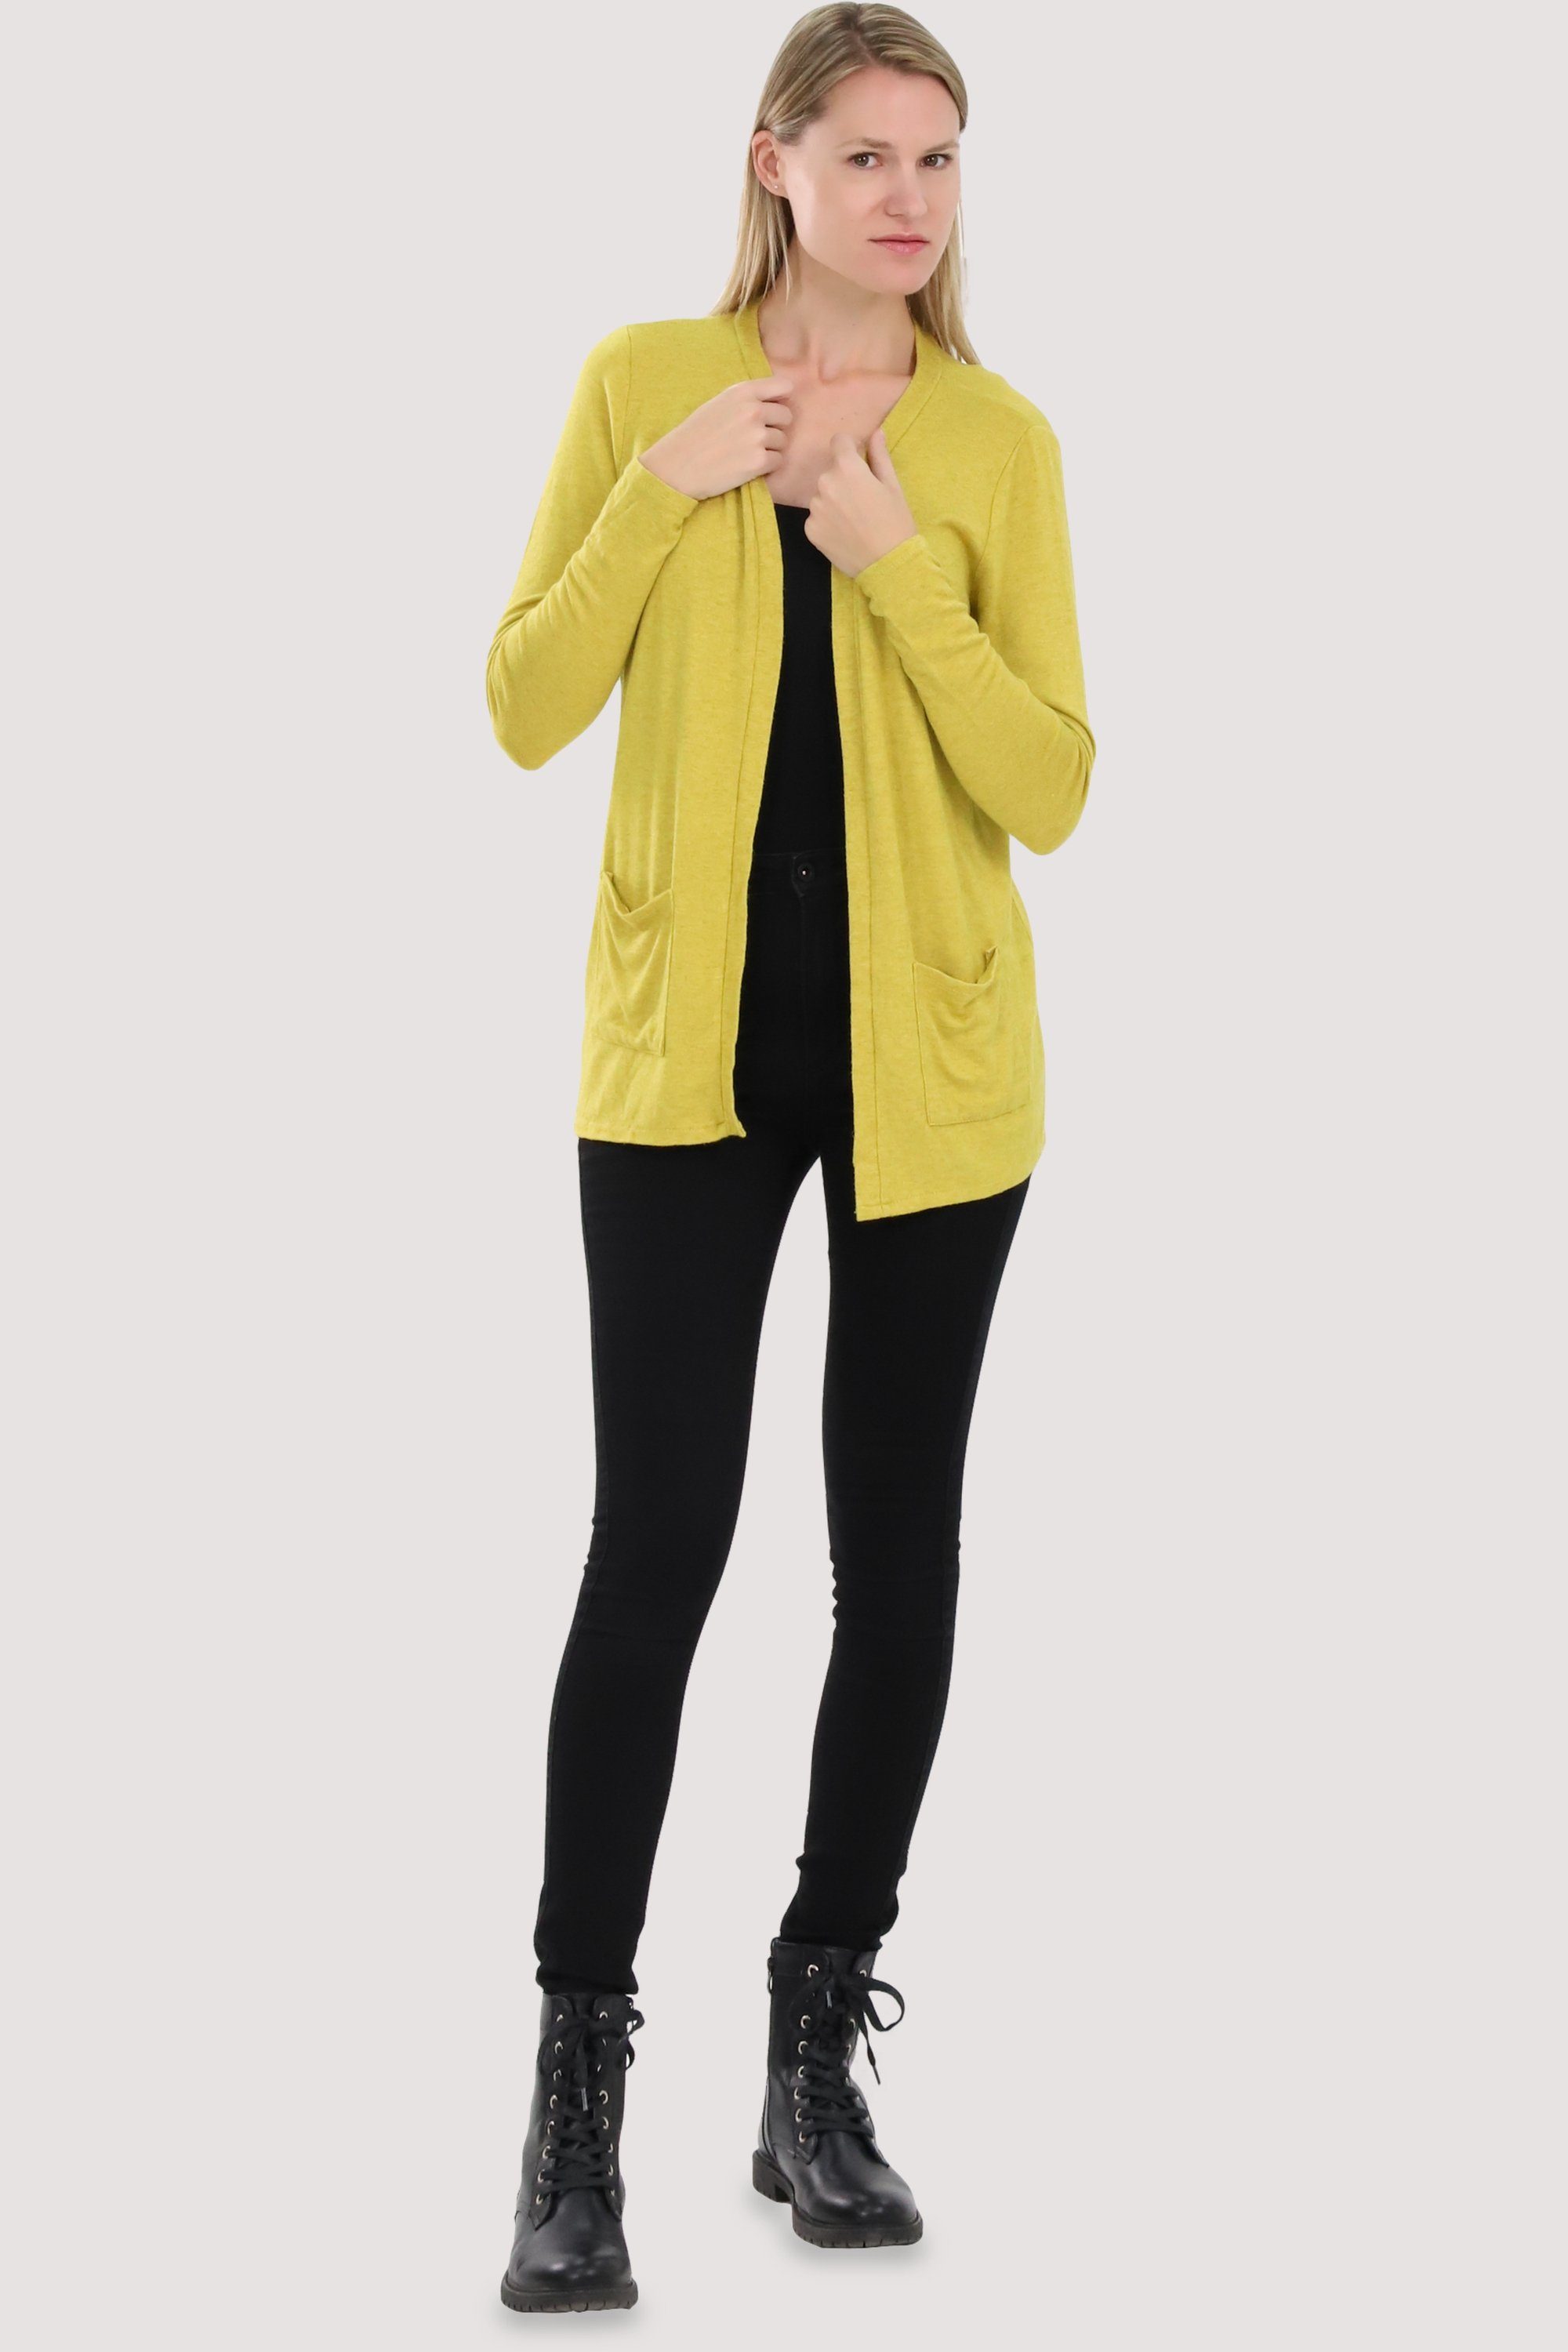 Eingriffstaschen more gelb Cardigan Jacke mit Feinstrick than fashion malito 2243